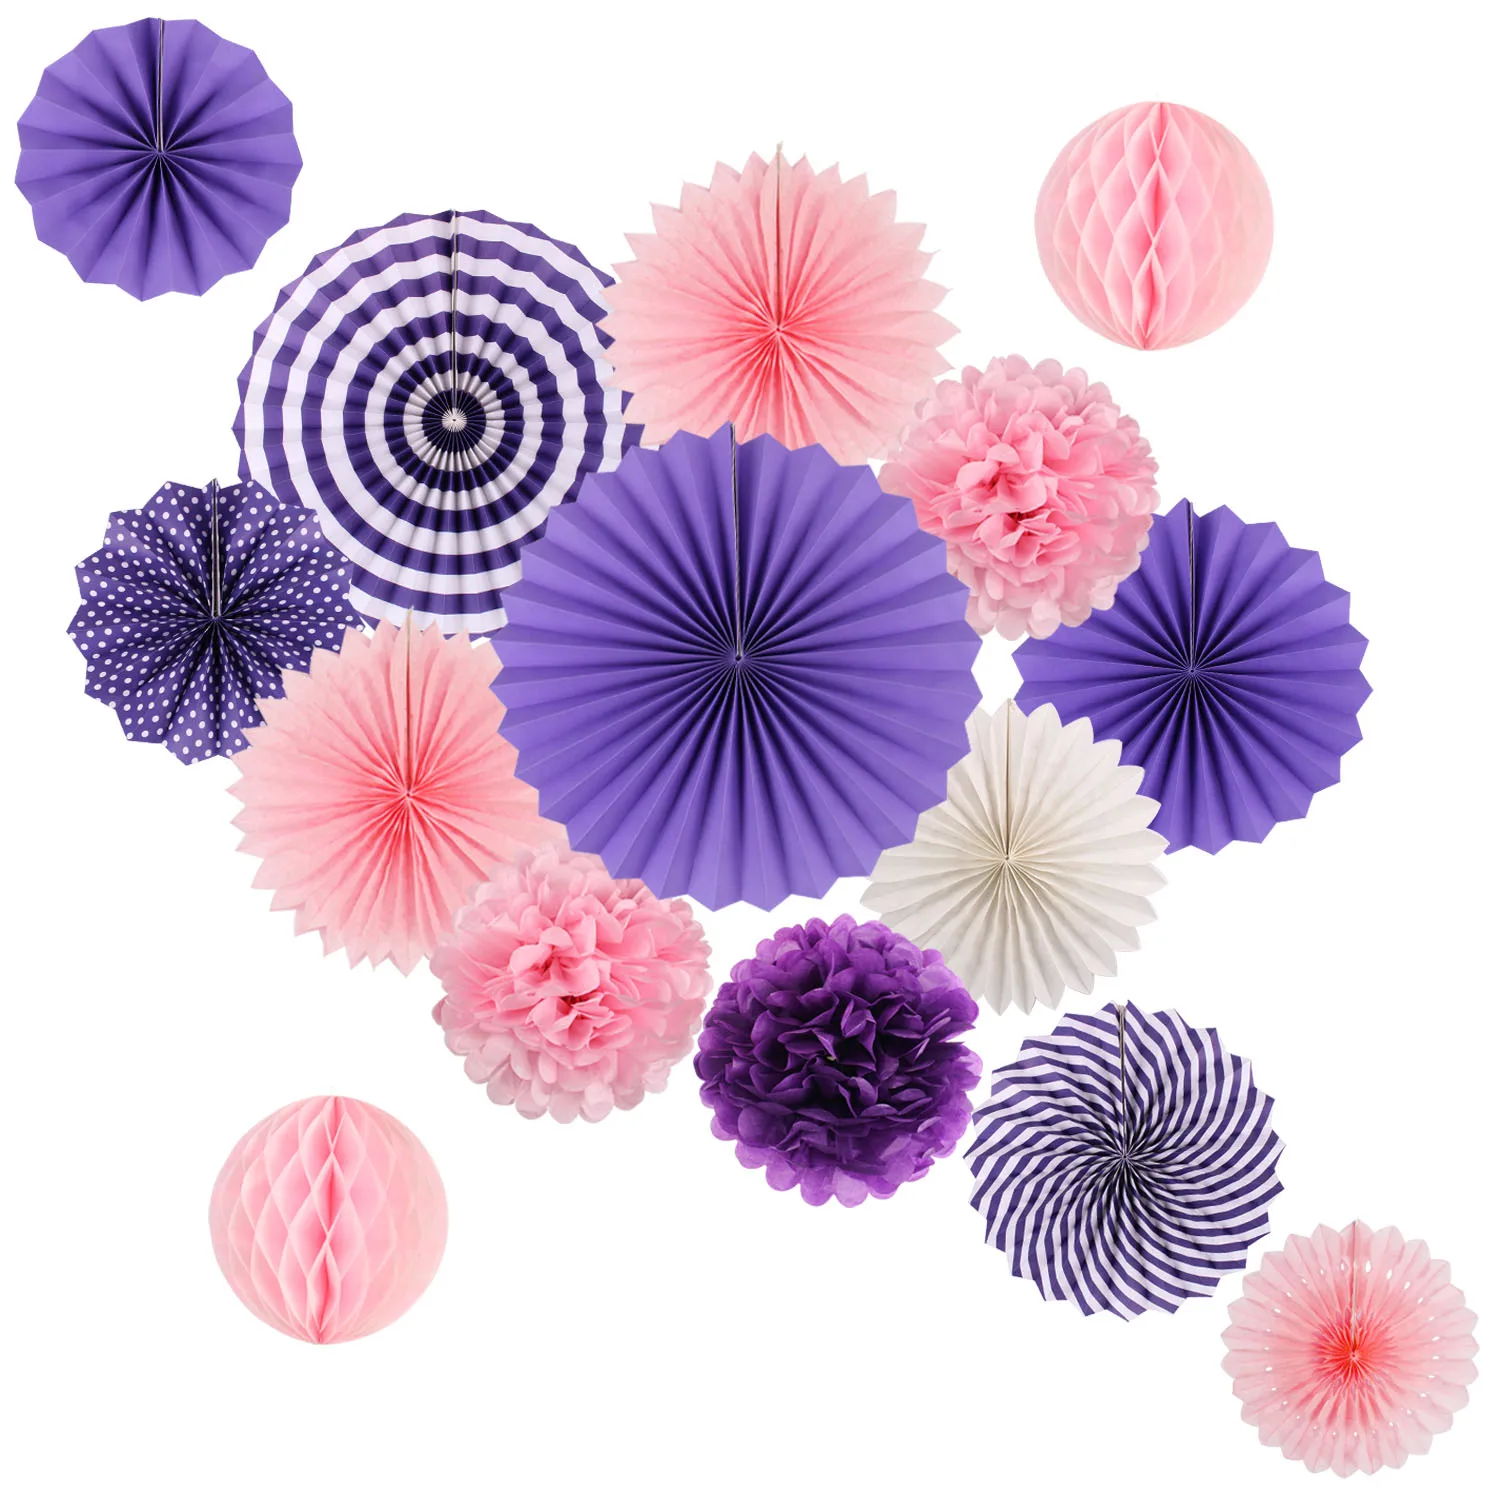 Zilue висящие украшения для вечеринки набор папиросная бумага веер бумага помпоны цветы для дня рождения девичник офисные вечерние украшения - Цвет: Pink Purple